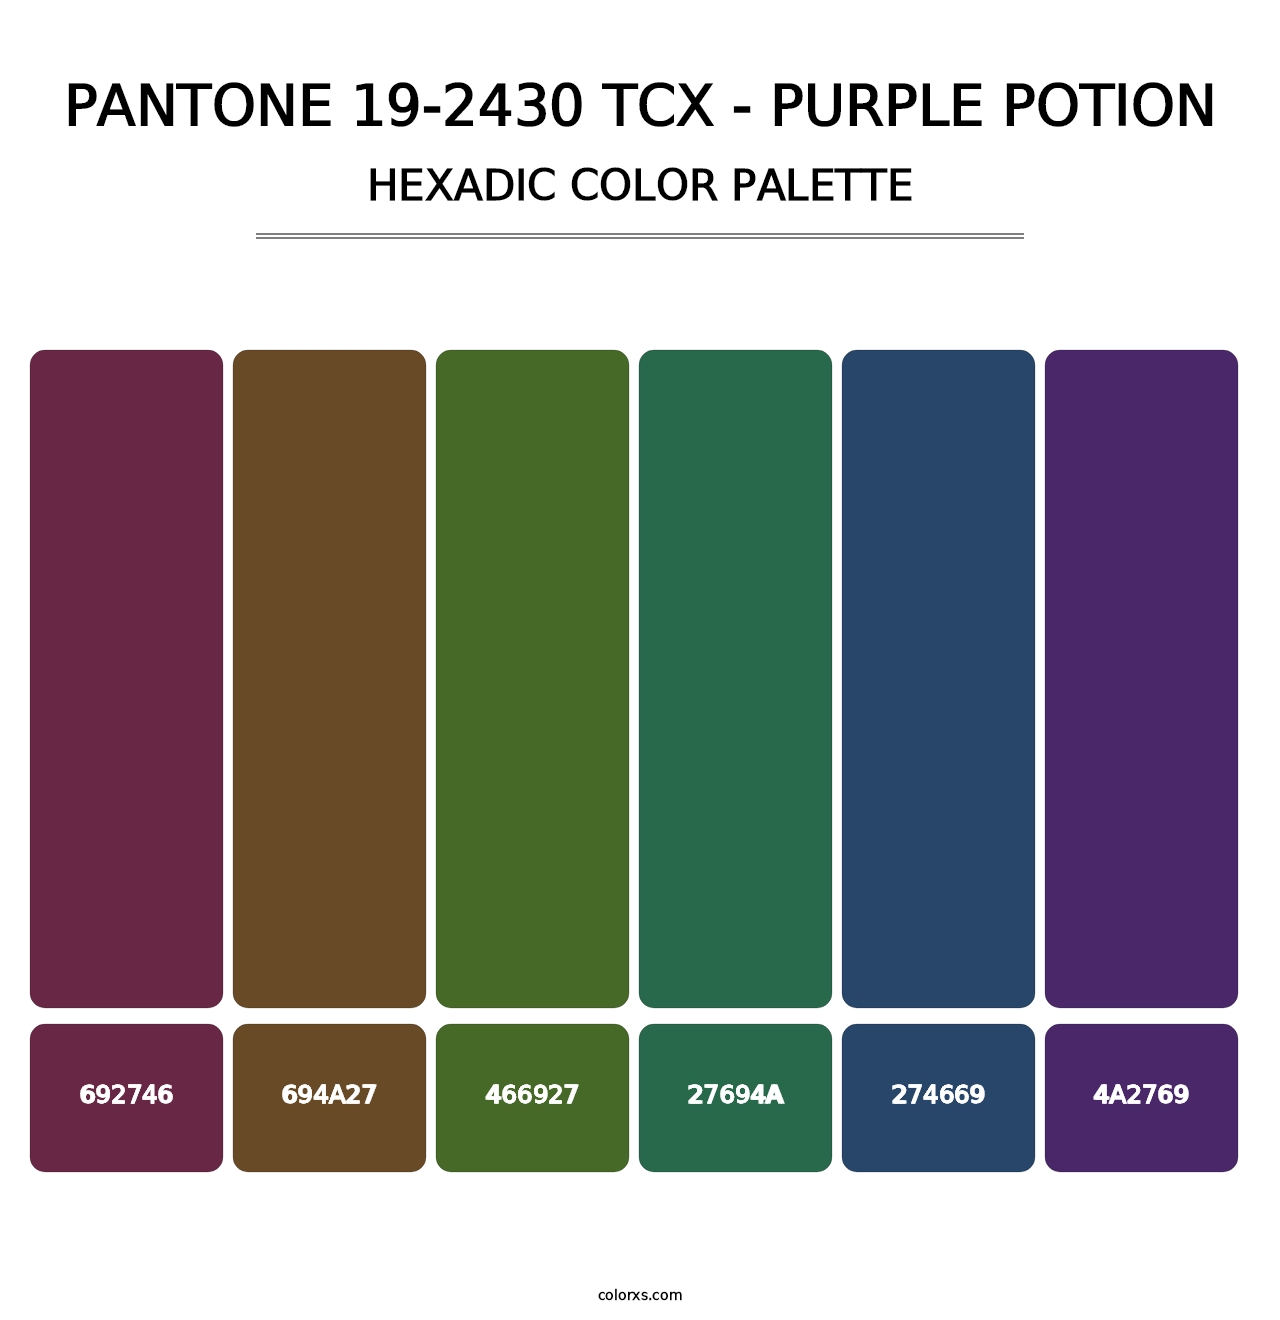 PANTONE 19-2430 TCX - Purple Potion - Hexadic Color Palette